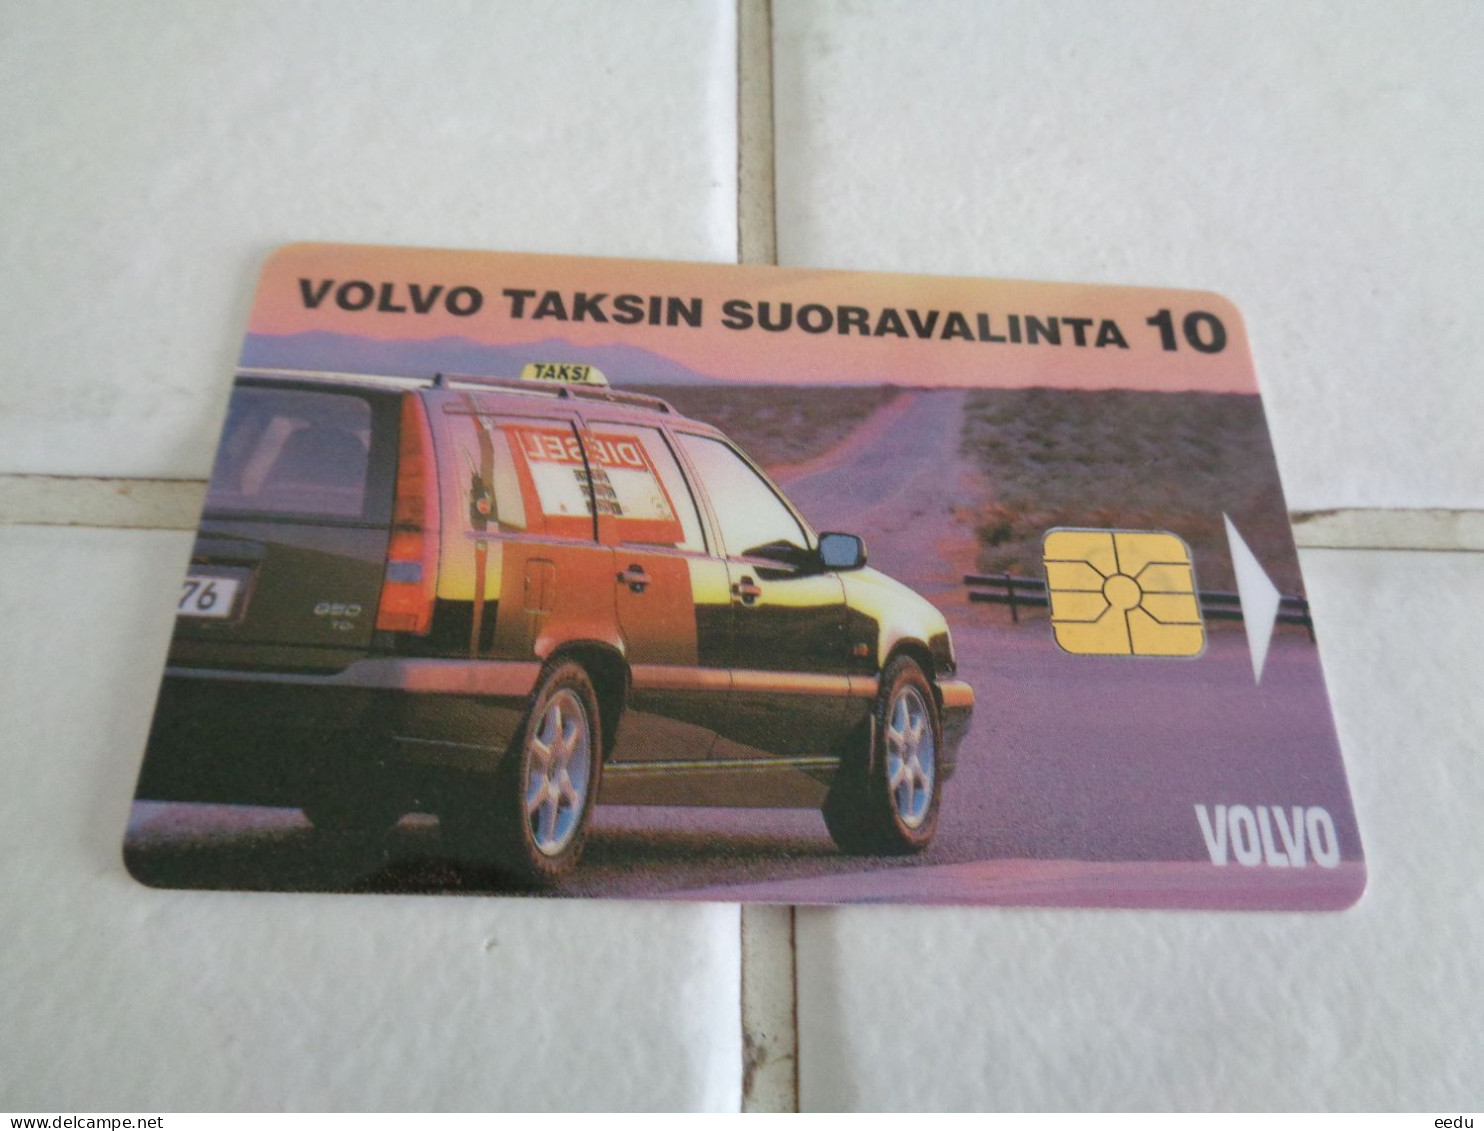 Finland Phonecard Tele Y1 - Finland